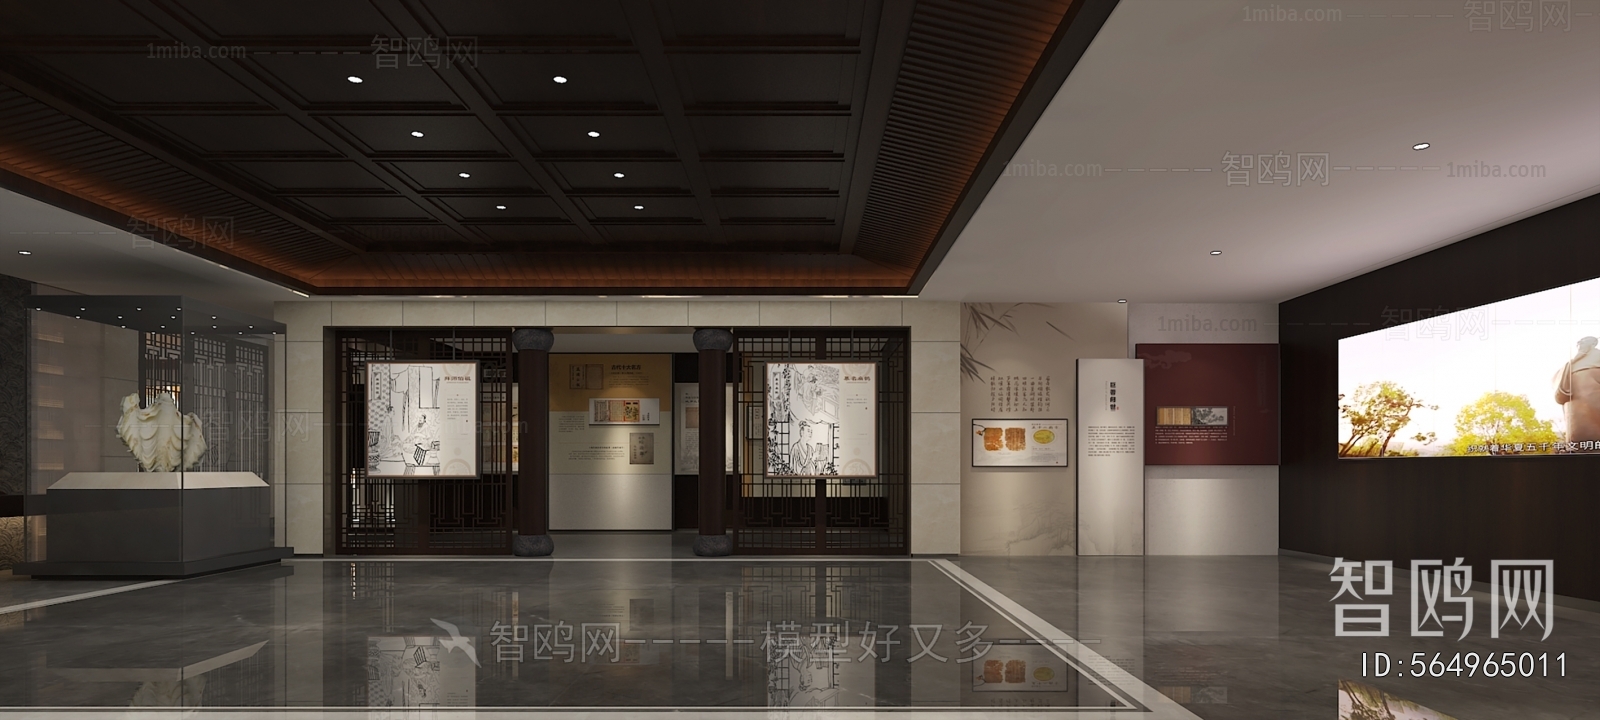 新中式医药企业展厅3D模型下载